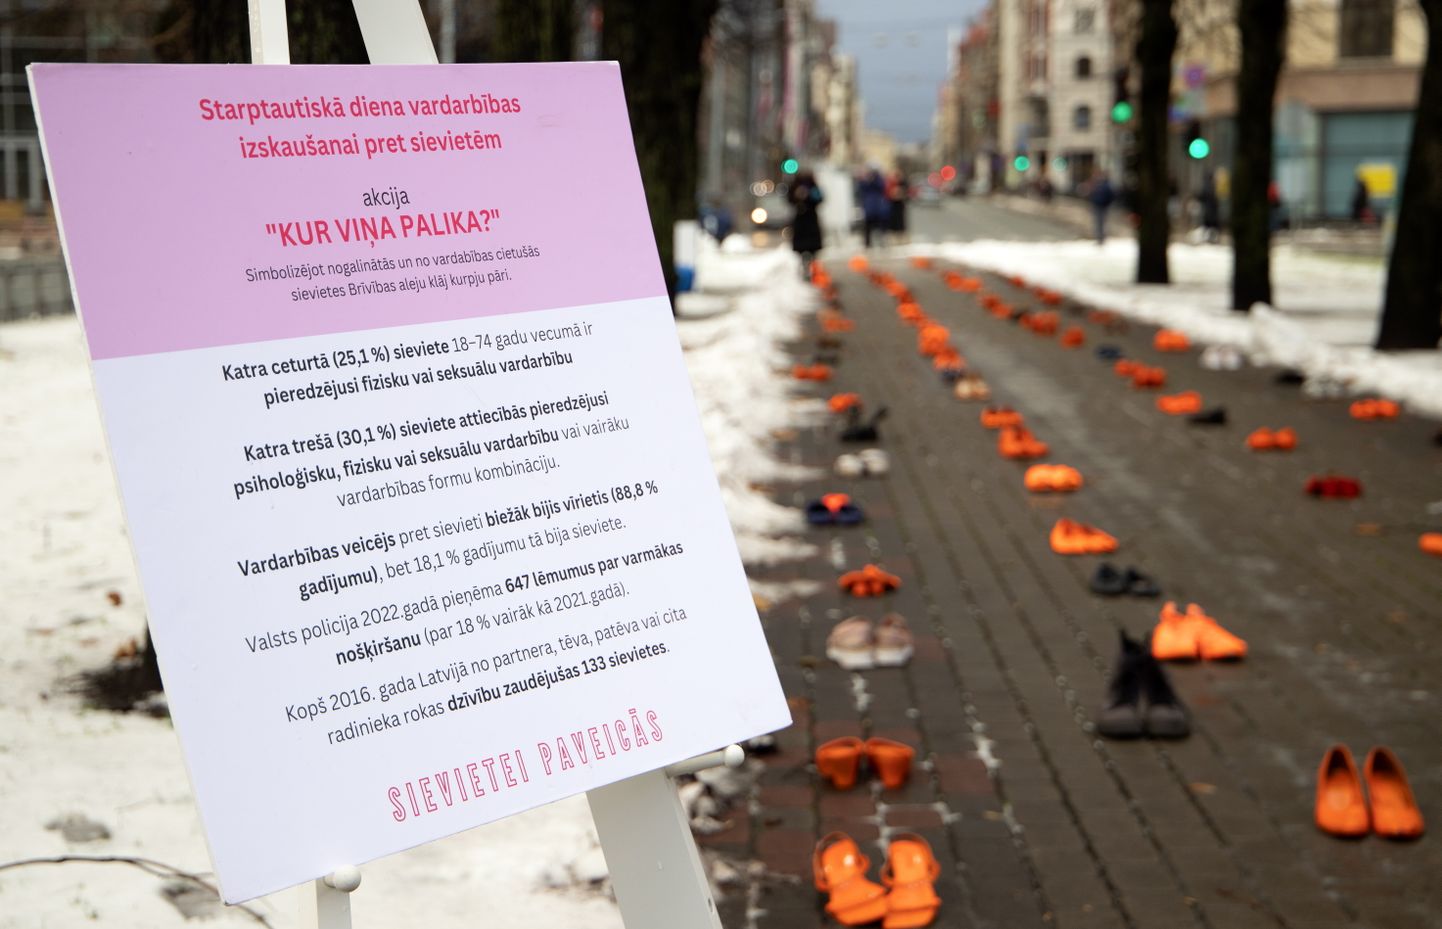 Brīvības bulvāra liepu alejā notiek akcija "Kur viņa palika?", lai atzīmētu Starptautisko dienu vardarbības izskaušanai pret sievietēm, ar sieviešu kurpju pāriem simbolizējot nogalinātās un no vardarbības cietušās sievietes.